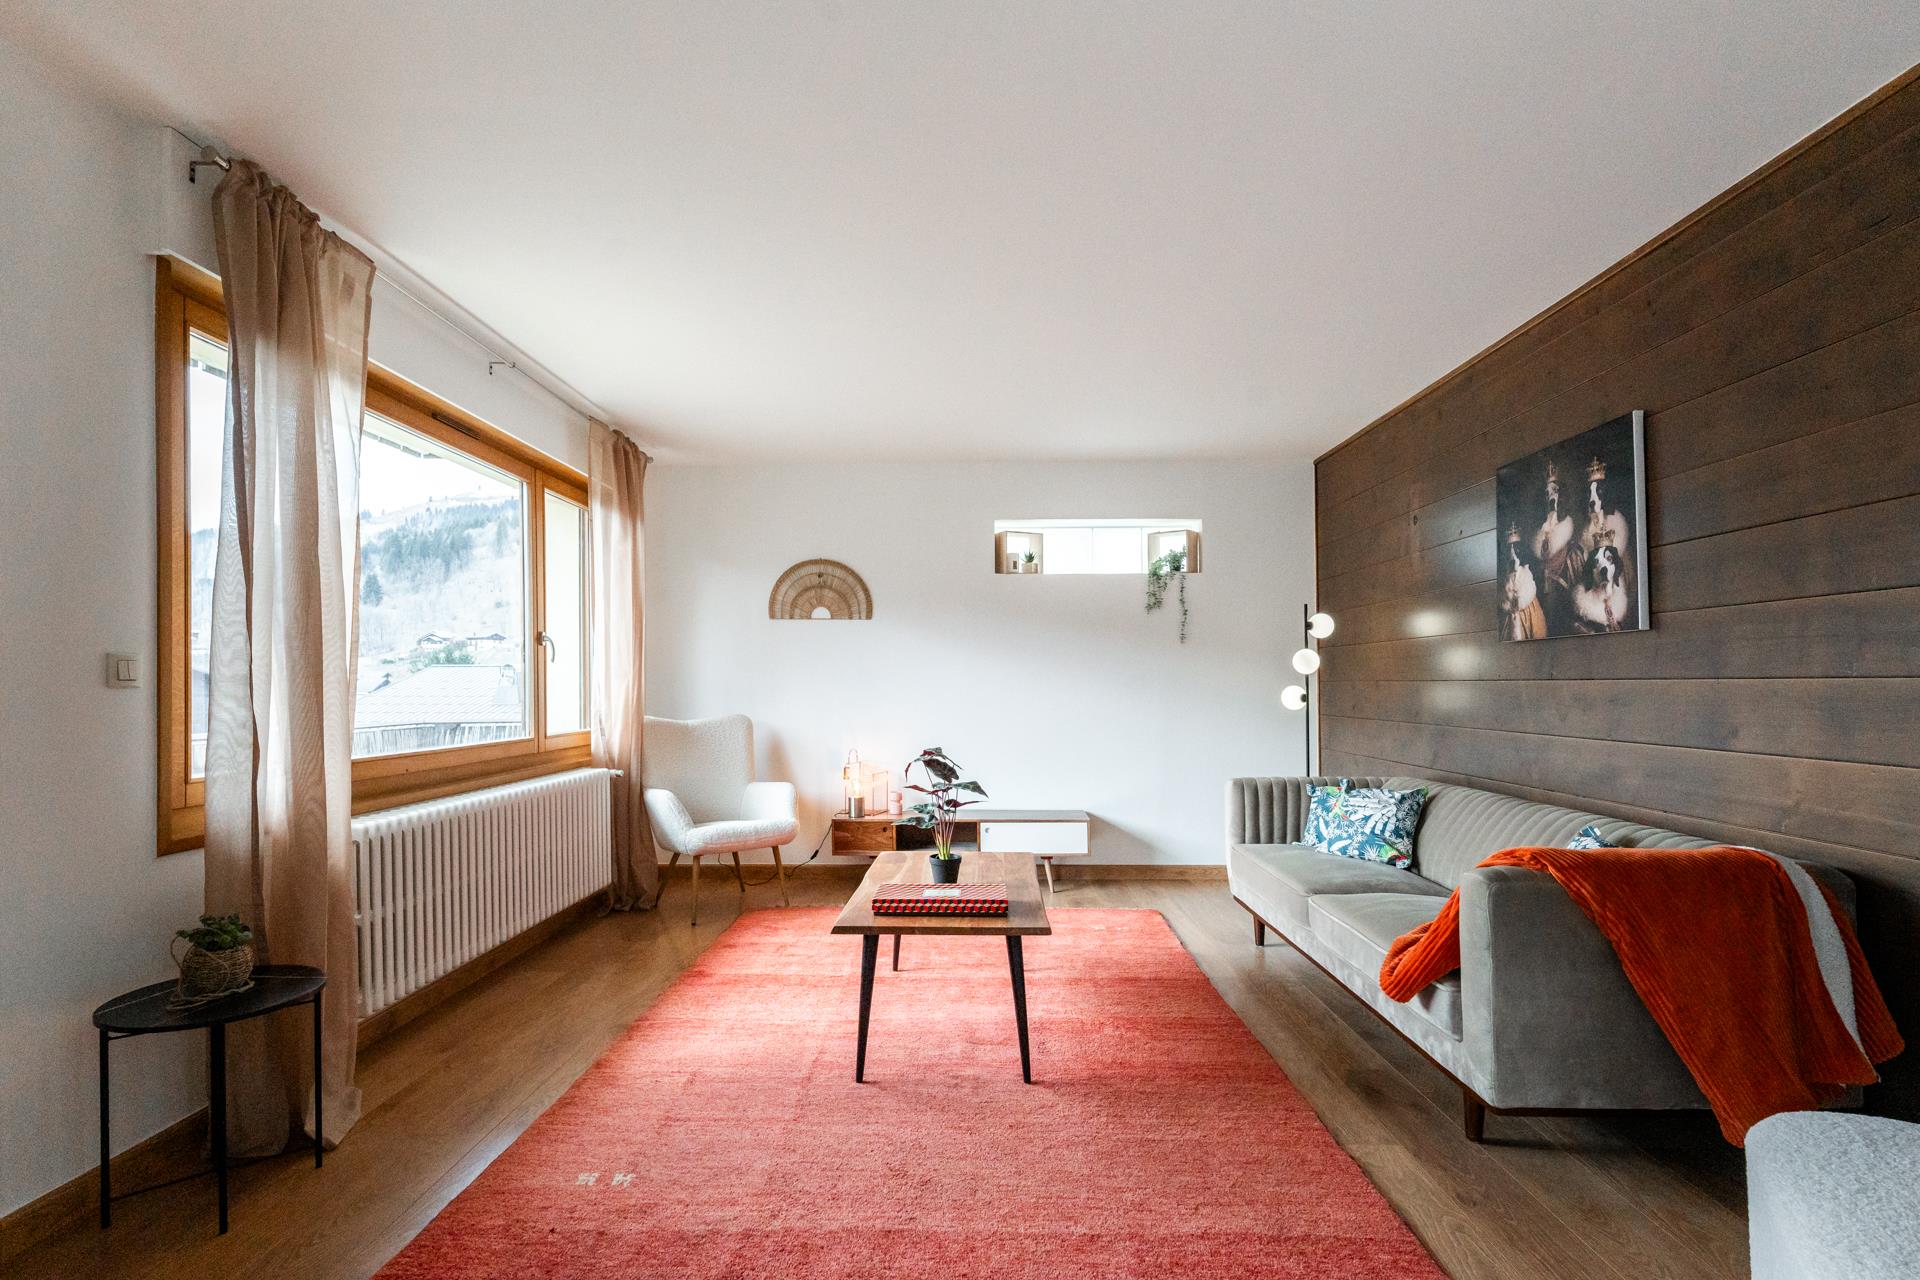 Appartement de 113 m² idéalement situé au coeur du village alpin des Gets profitant d'une superbe vu